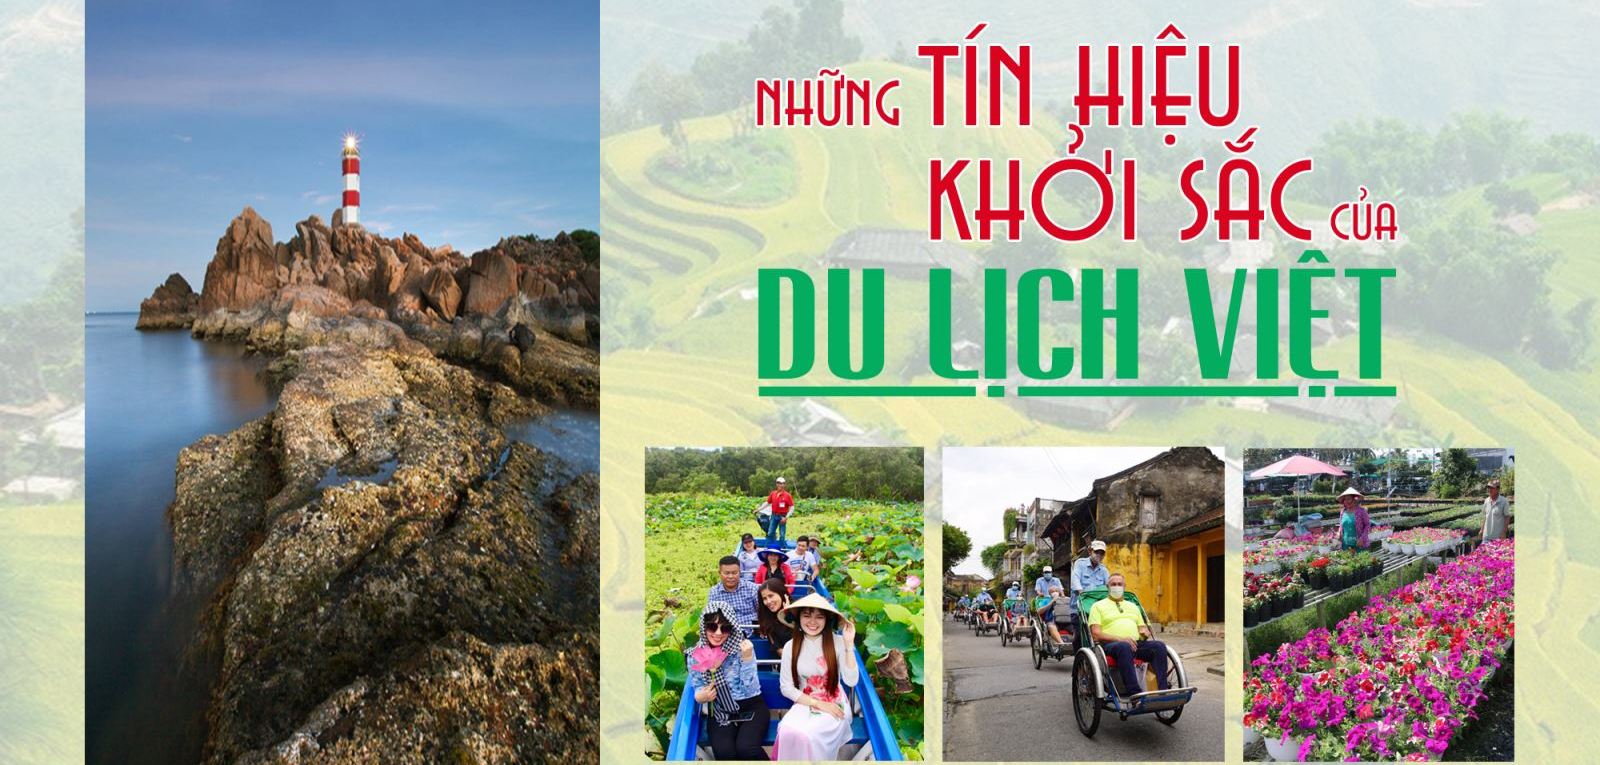 Những tín hiệu khởi sắc của du lịch Việt